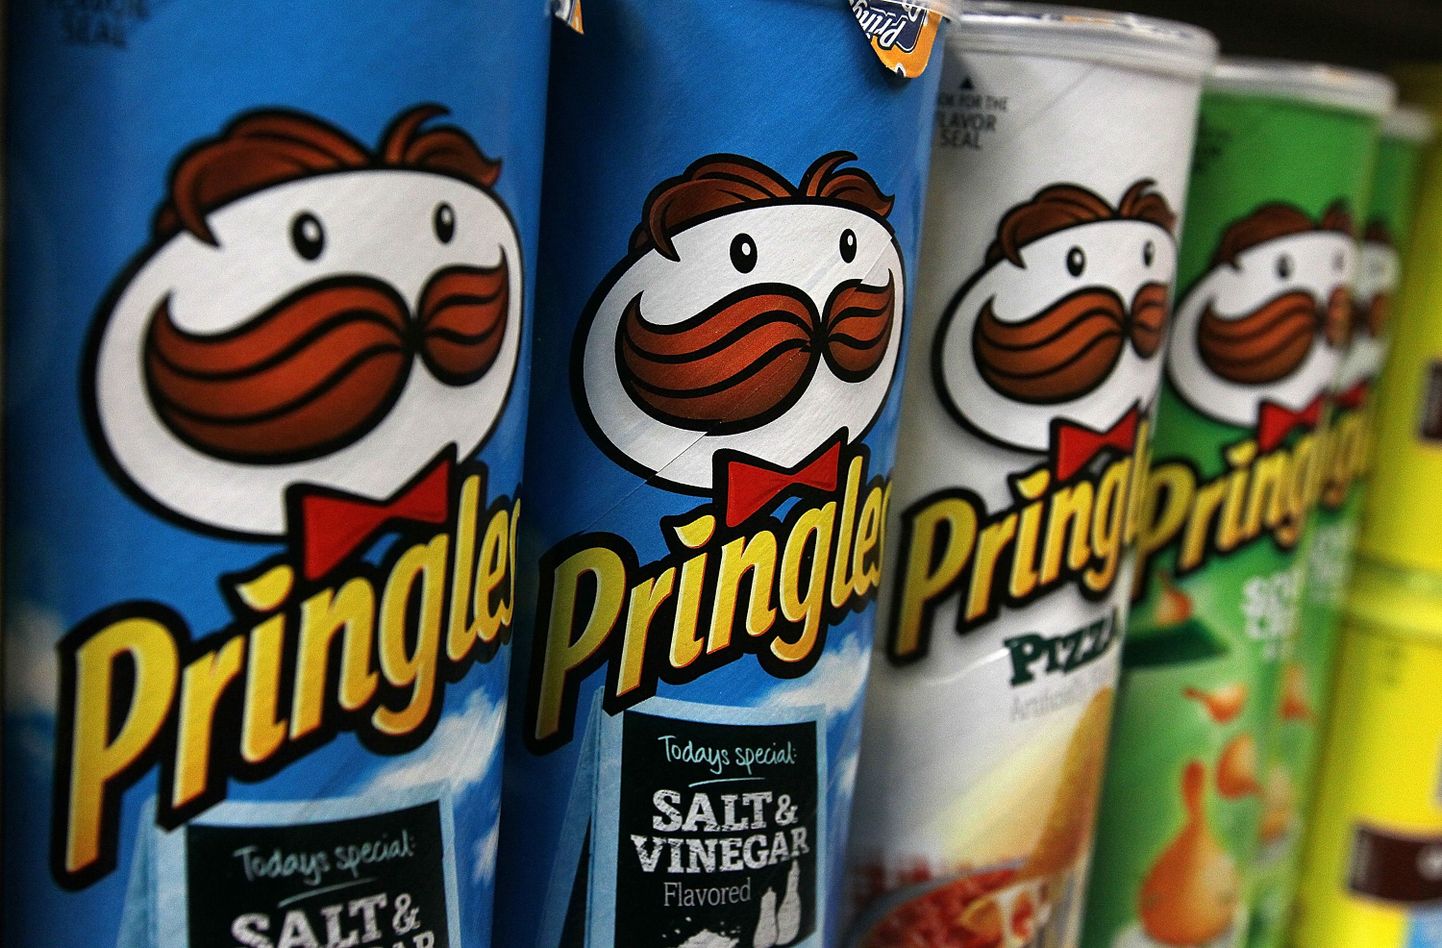 Pringlesi kartulikrõpsud on pakitud sügavasse purki.